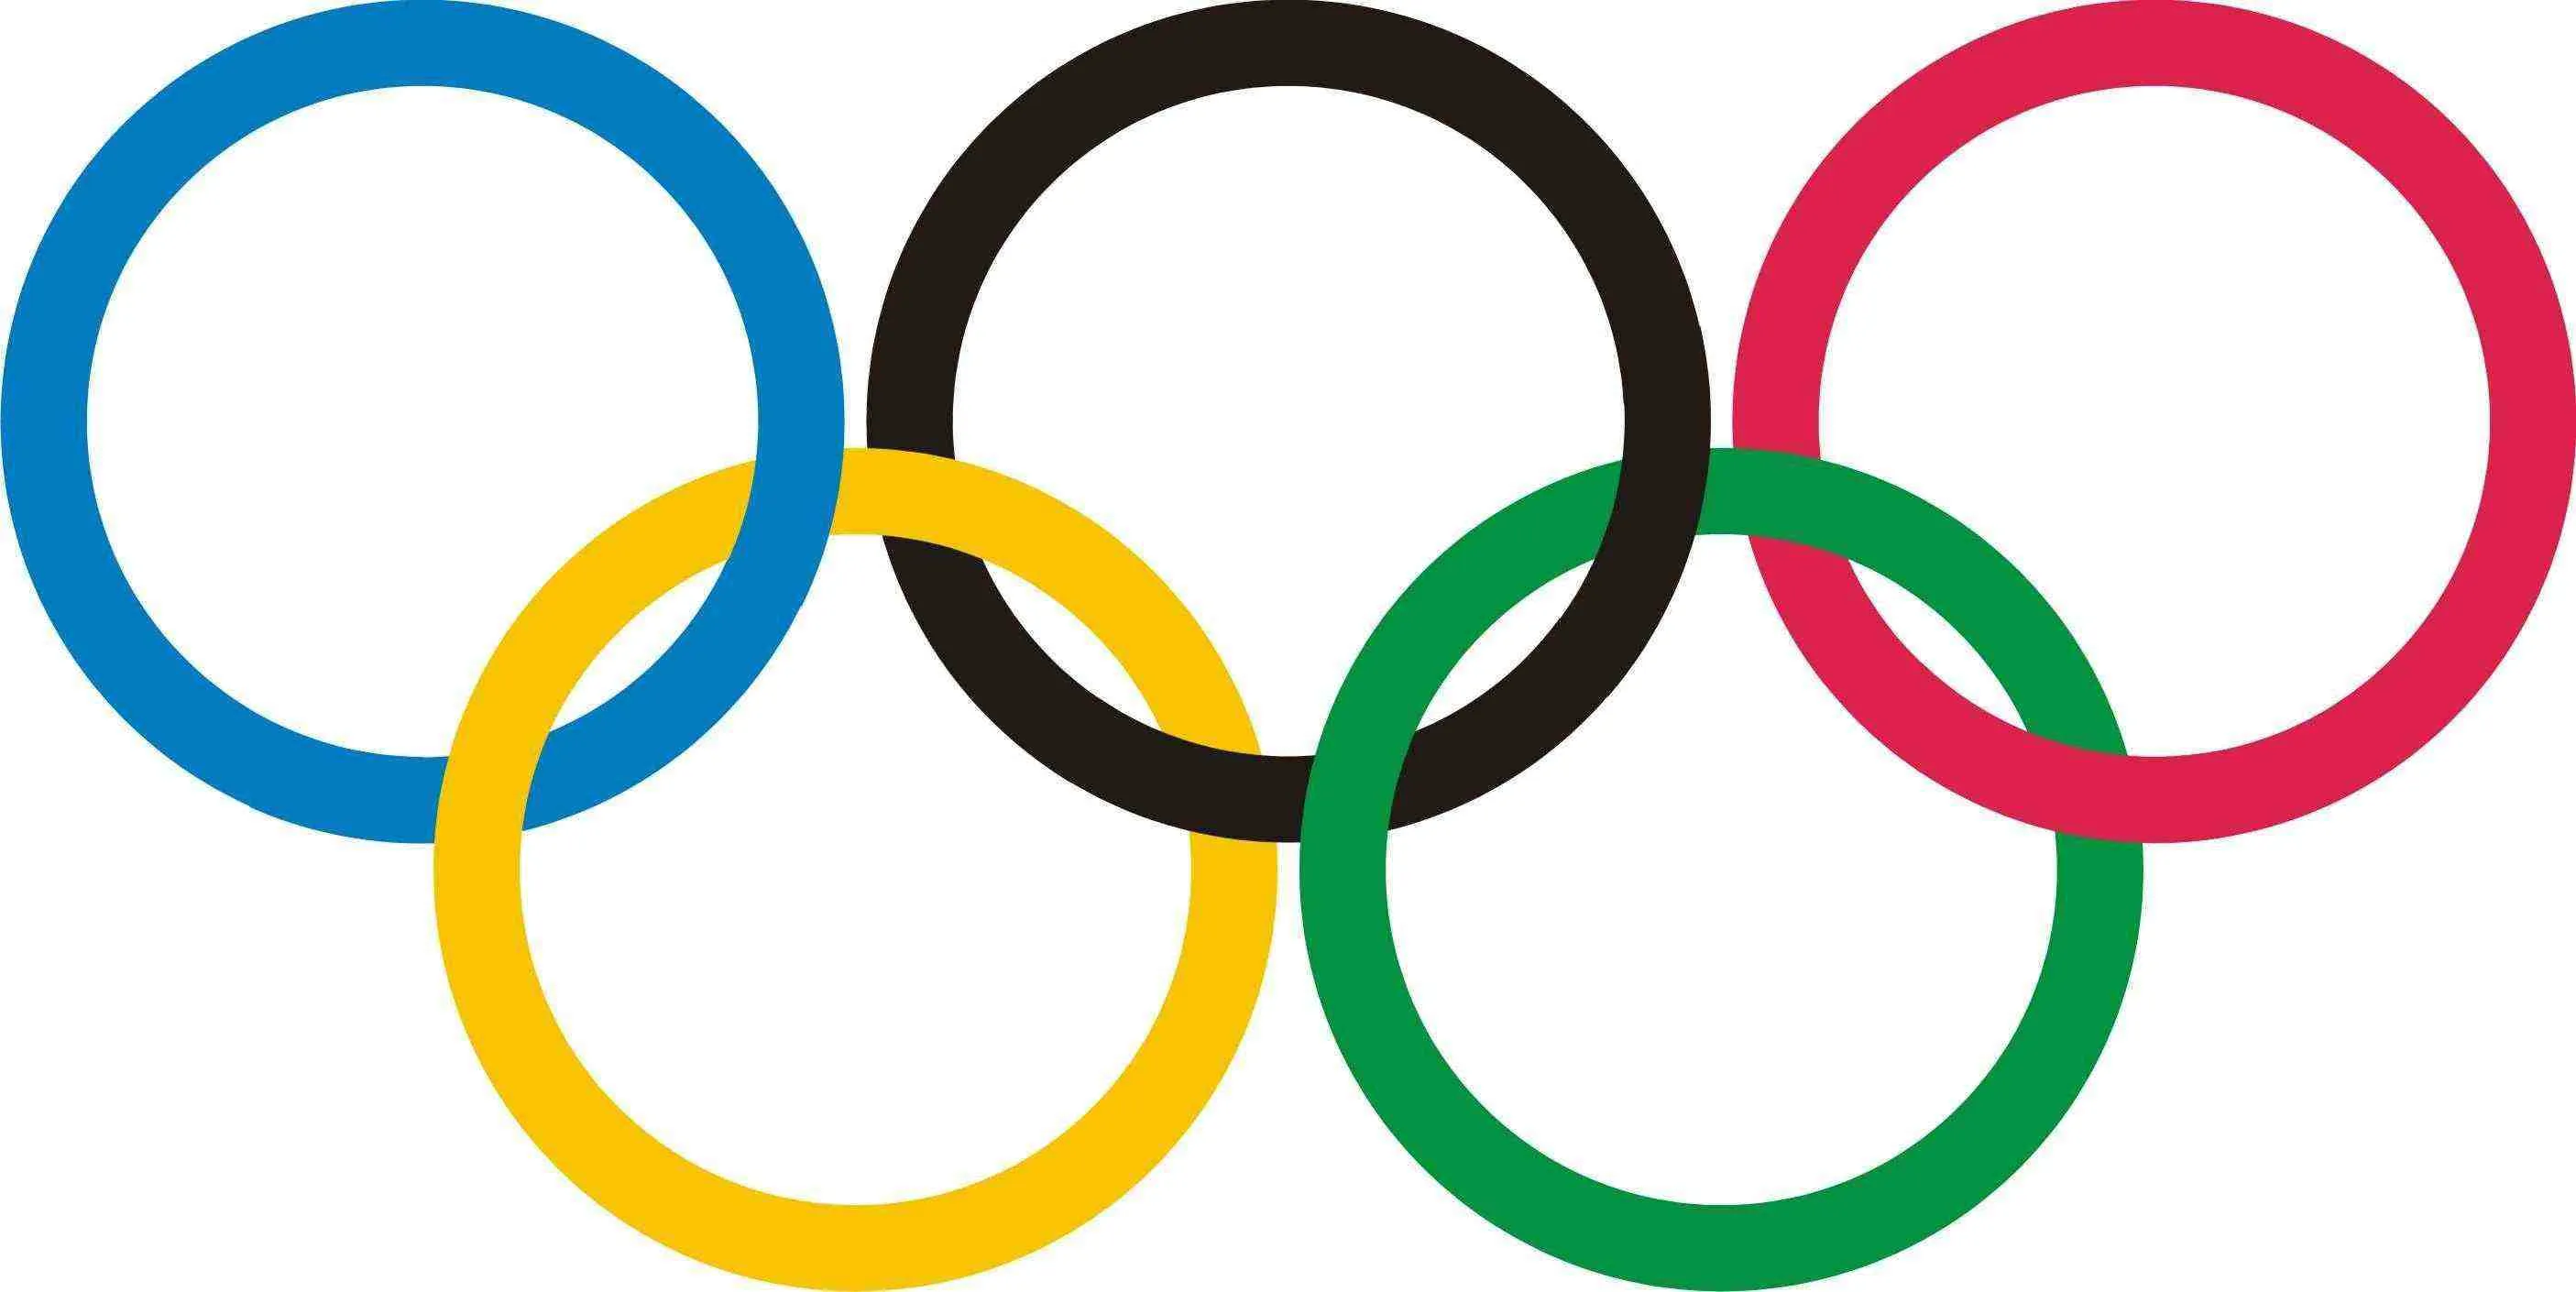 Быстрее сильнее глубже. Кольца олимпиады. Эмблема олимпиады. Логотип Олимпийских игр. Пять колец олимпиады.